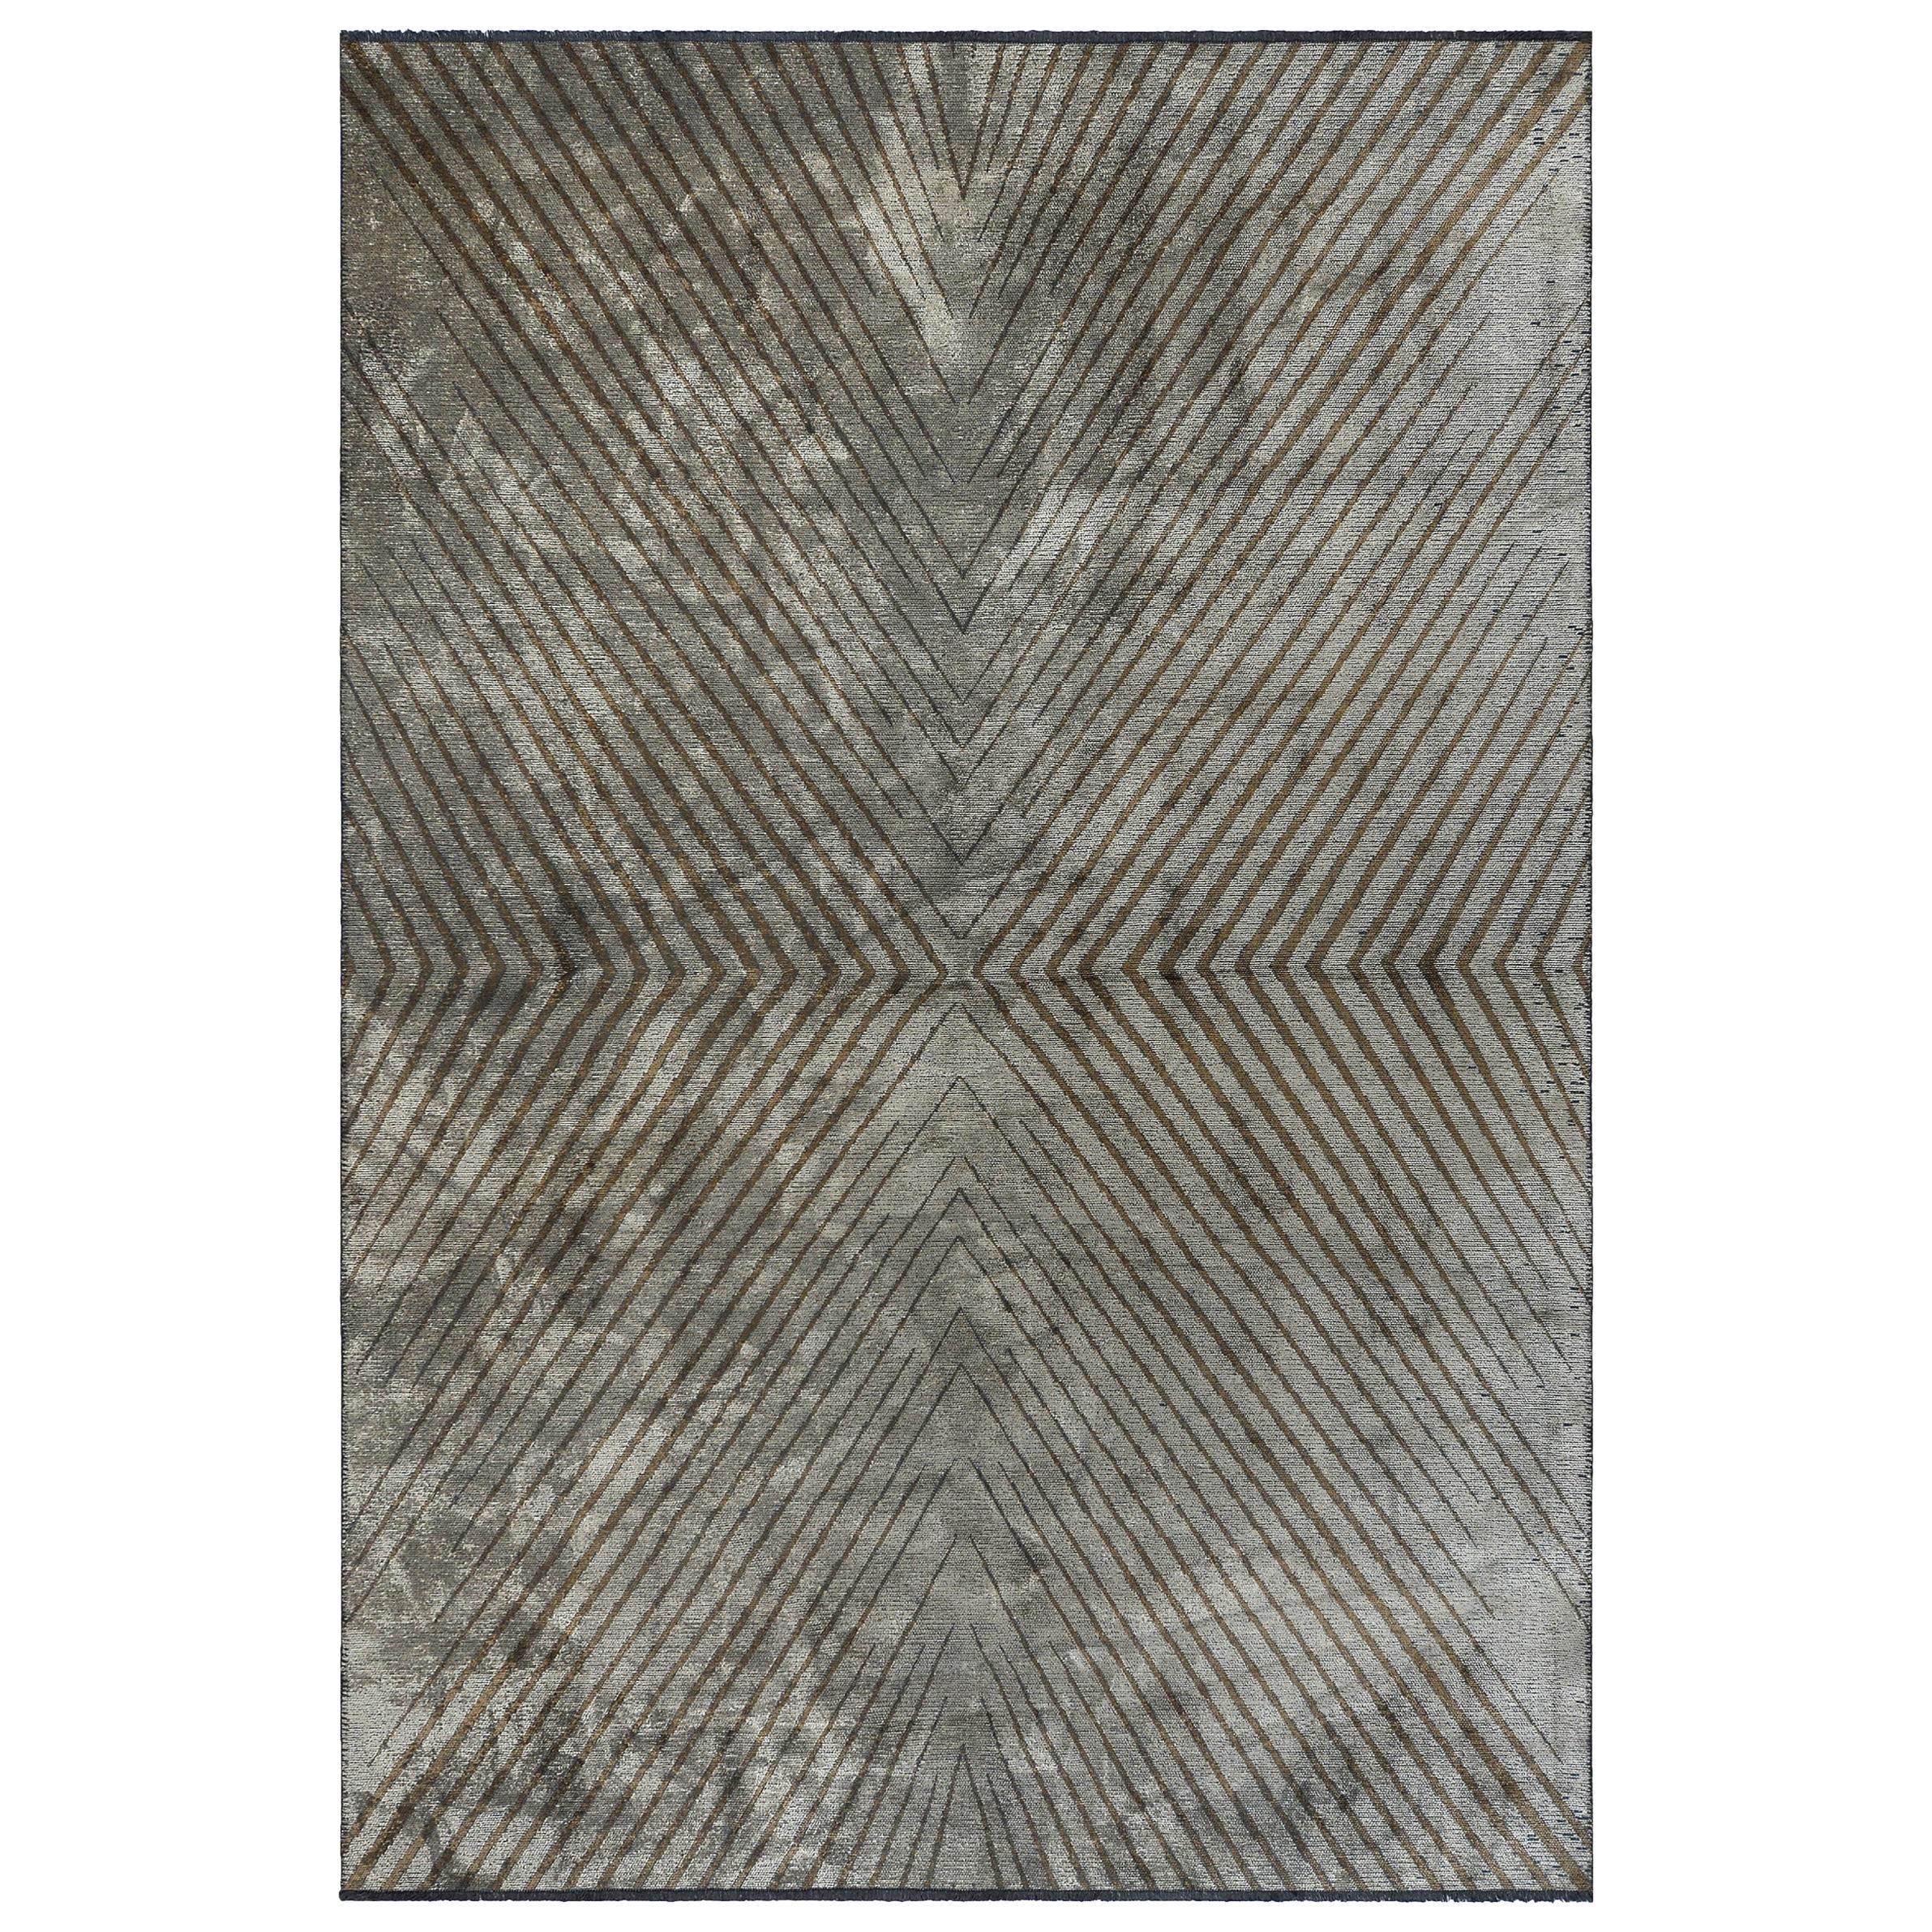 Silber Silbergrauer und brauner zeitgenössischer Teppich mit Chevron-Muster und weichem Semi-Plüsch